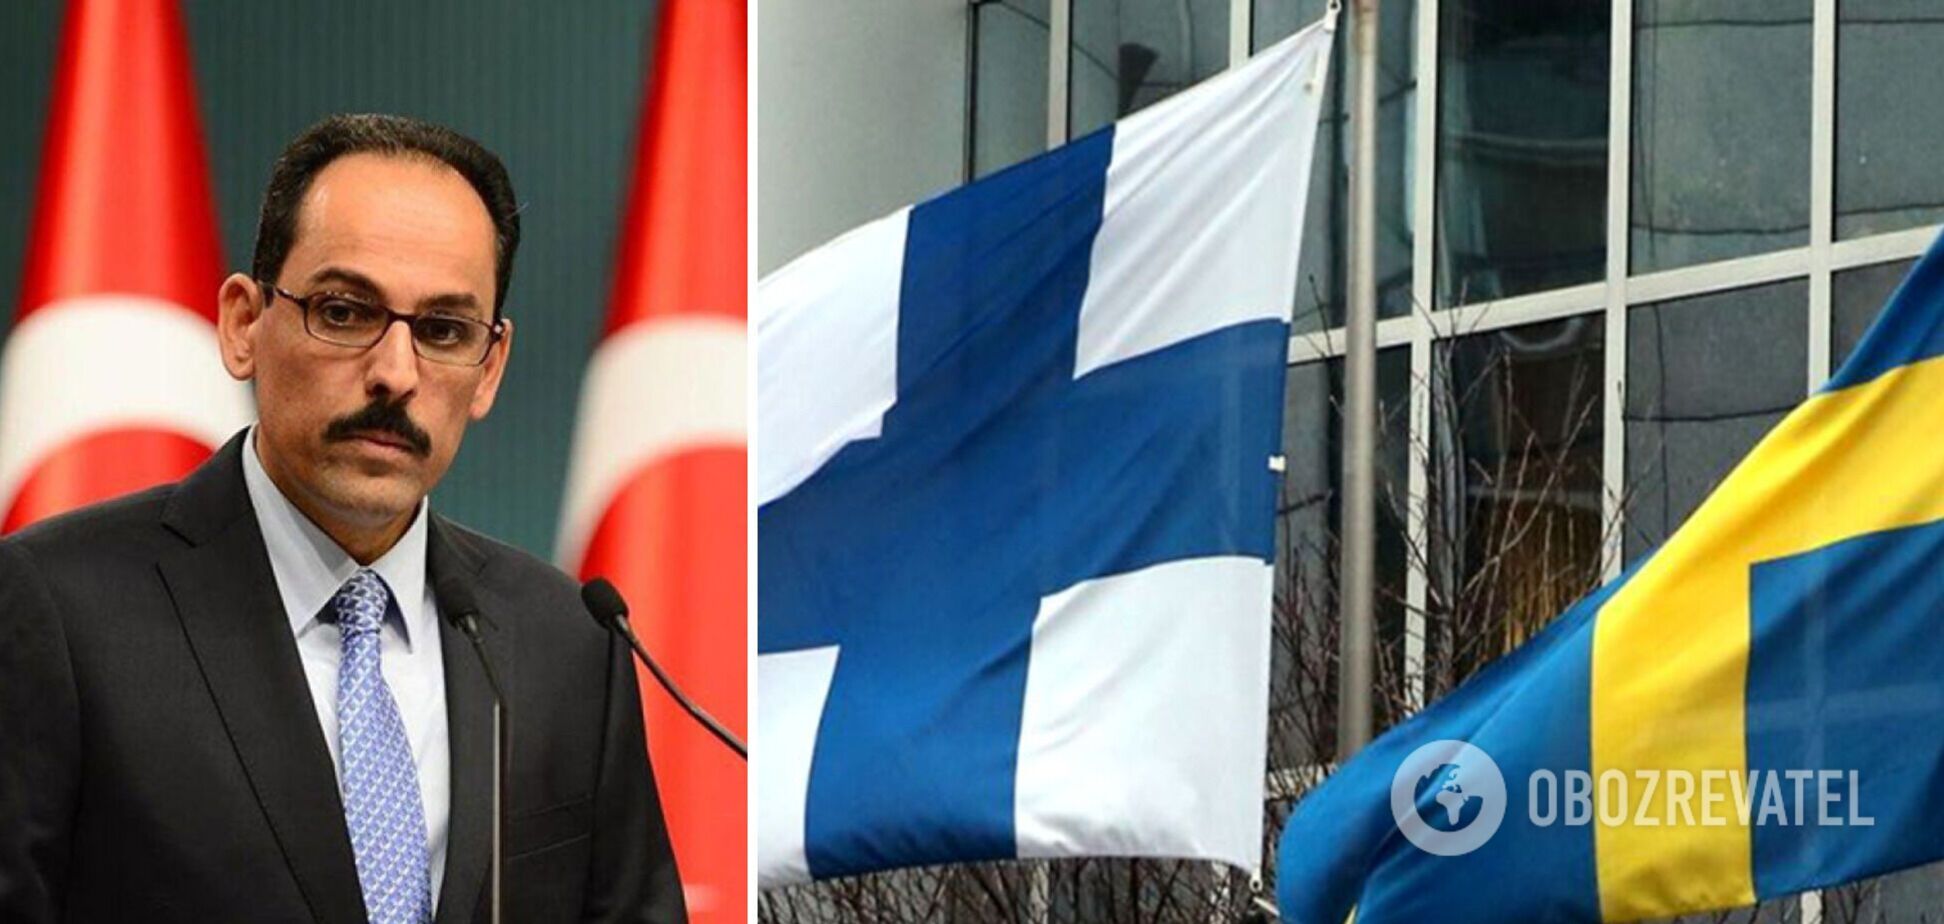 У Туреччині уточнили позицію щодо вступу Фінляндії та Швеції до НАТО: ми не зачиняємо двері